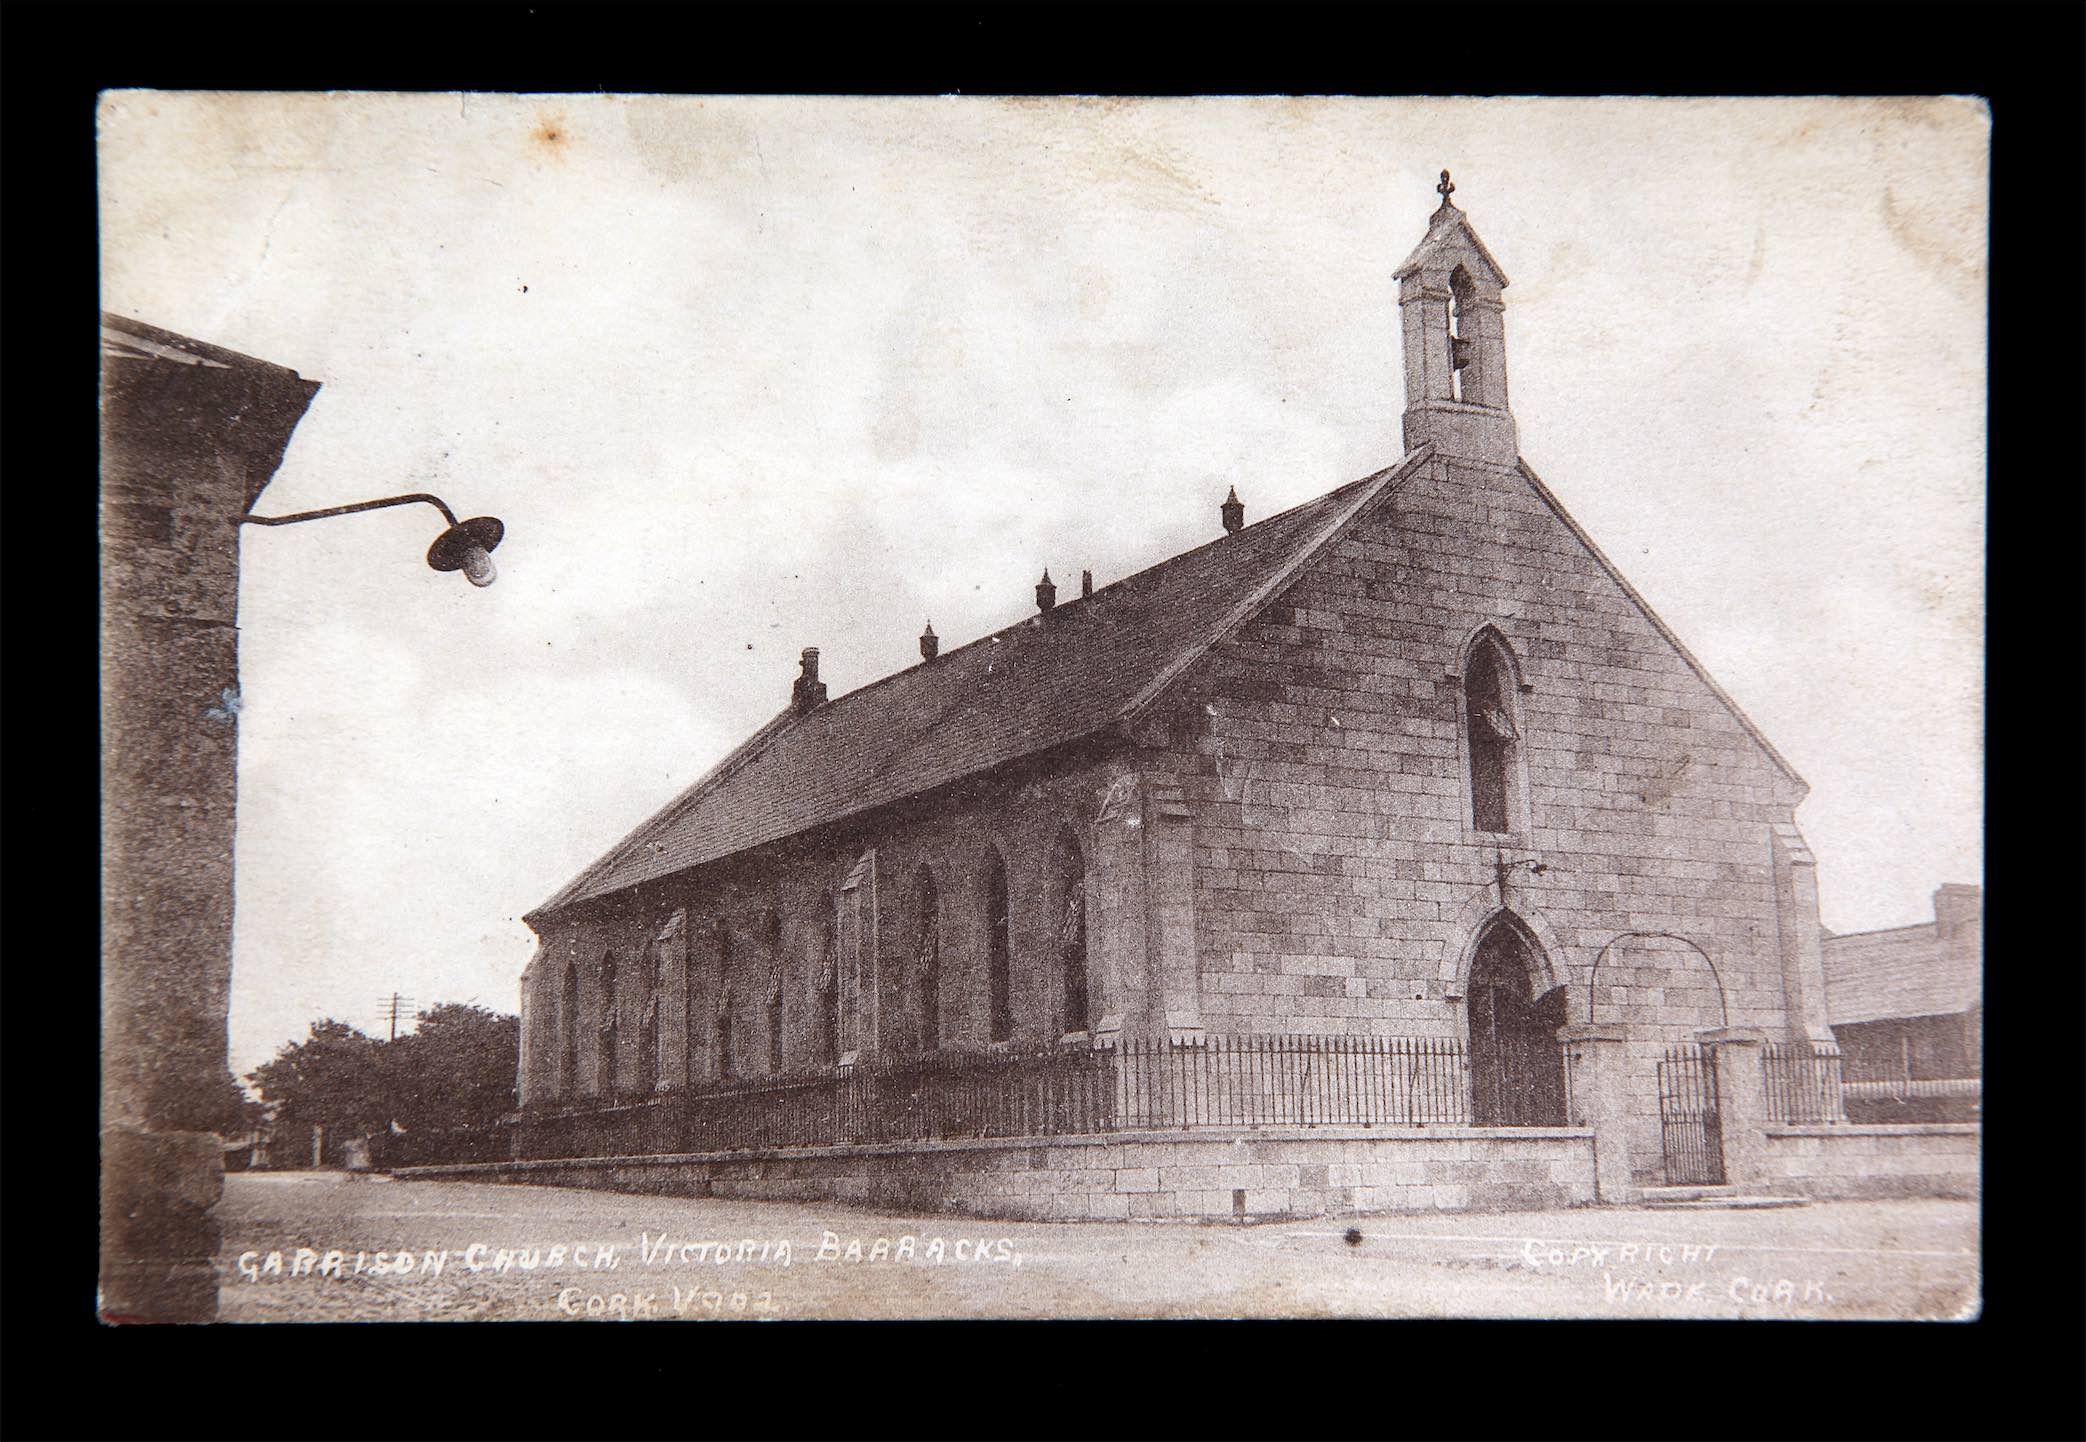 2010.22.67-D22.9-Postcard-Garrison-Church-Victoria-Barracks-1